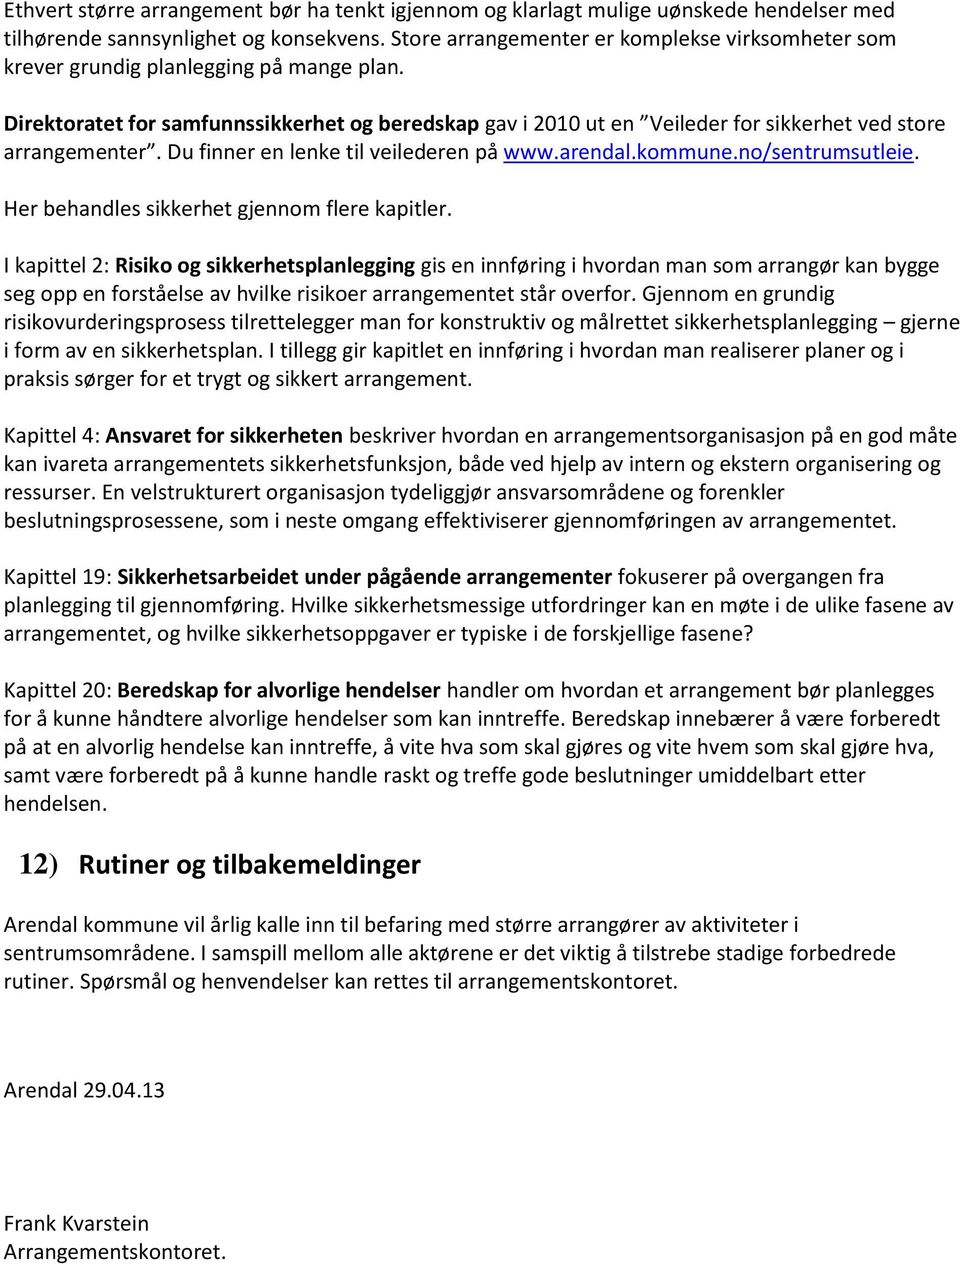 Direktoratet for samfunnssikkerhet og beredskap gav i 2010 ut en Veileder for sikkerhet ved store arrangementer. Du finner en lenke til veilederen på www.arendal.kommune.no/sentrumsutleie.